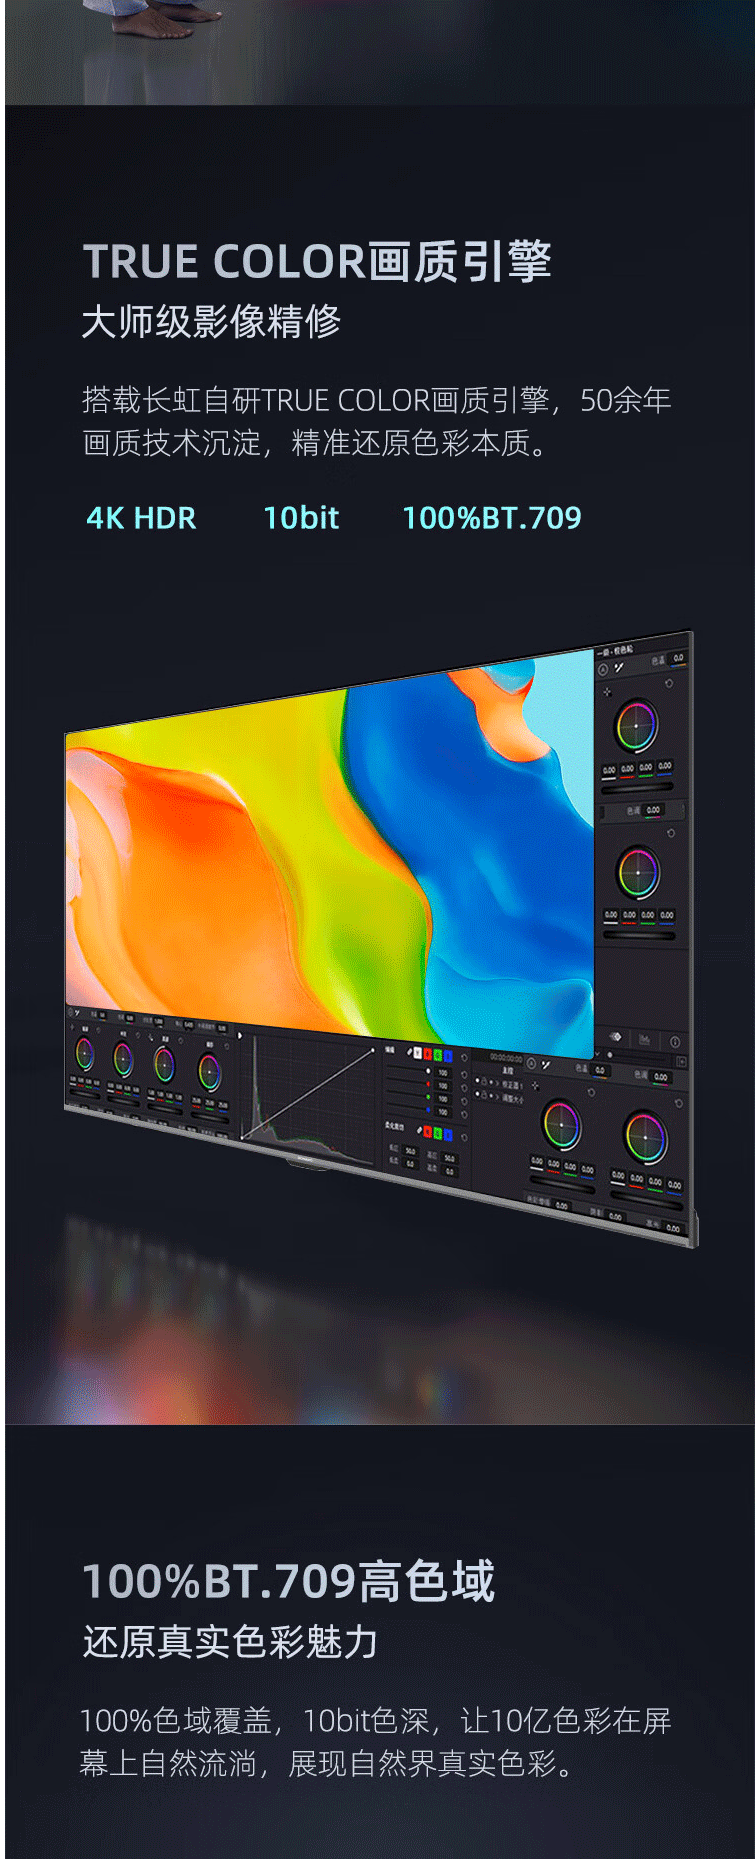 长虹/CHANGHONG 65D59H 65英寸4K超高清 LED液晶电视机